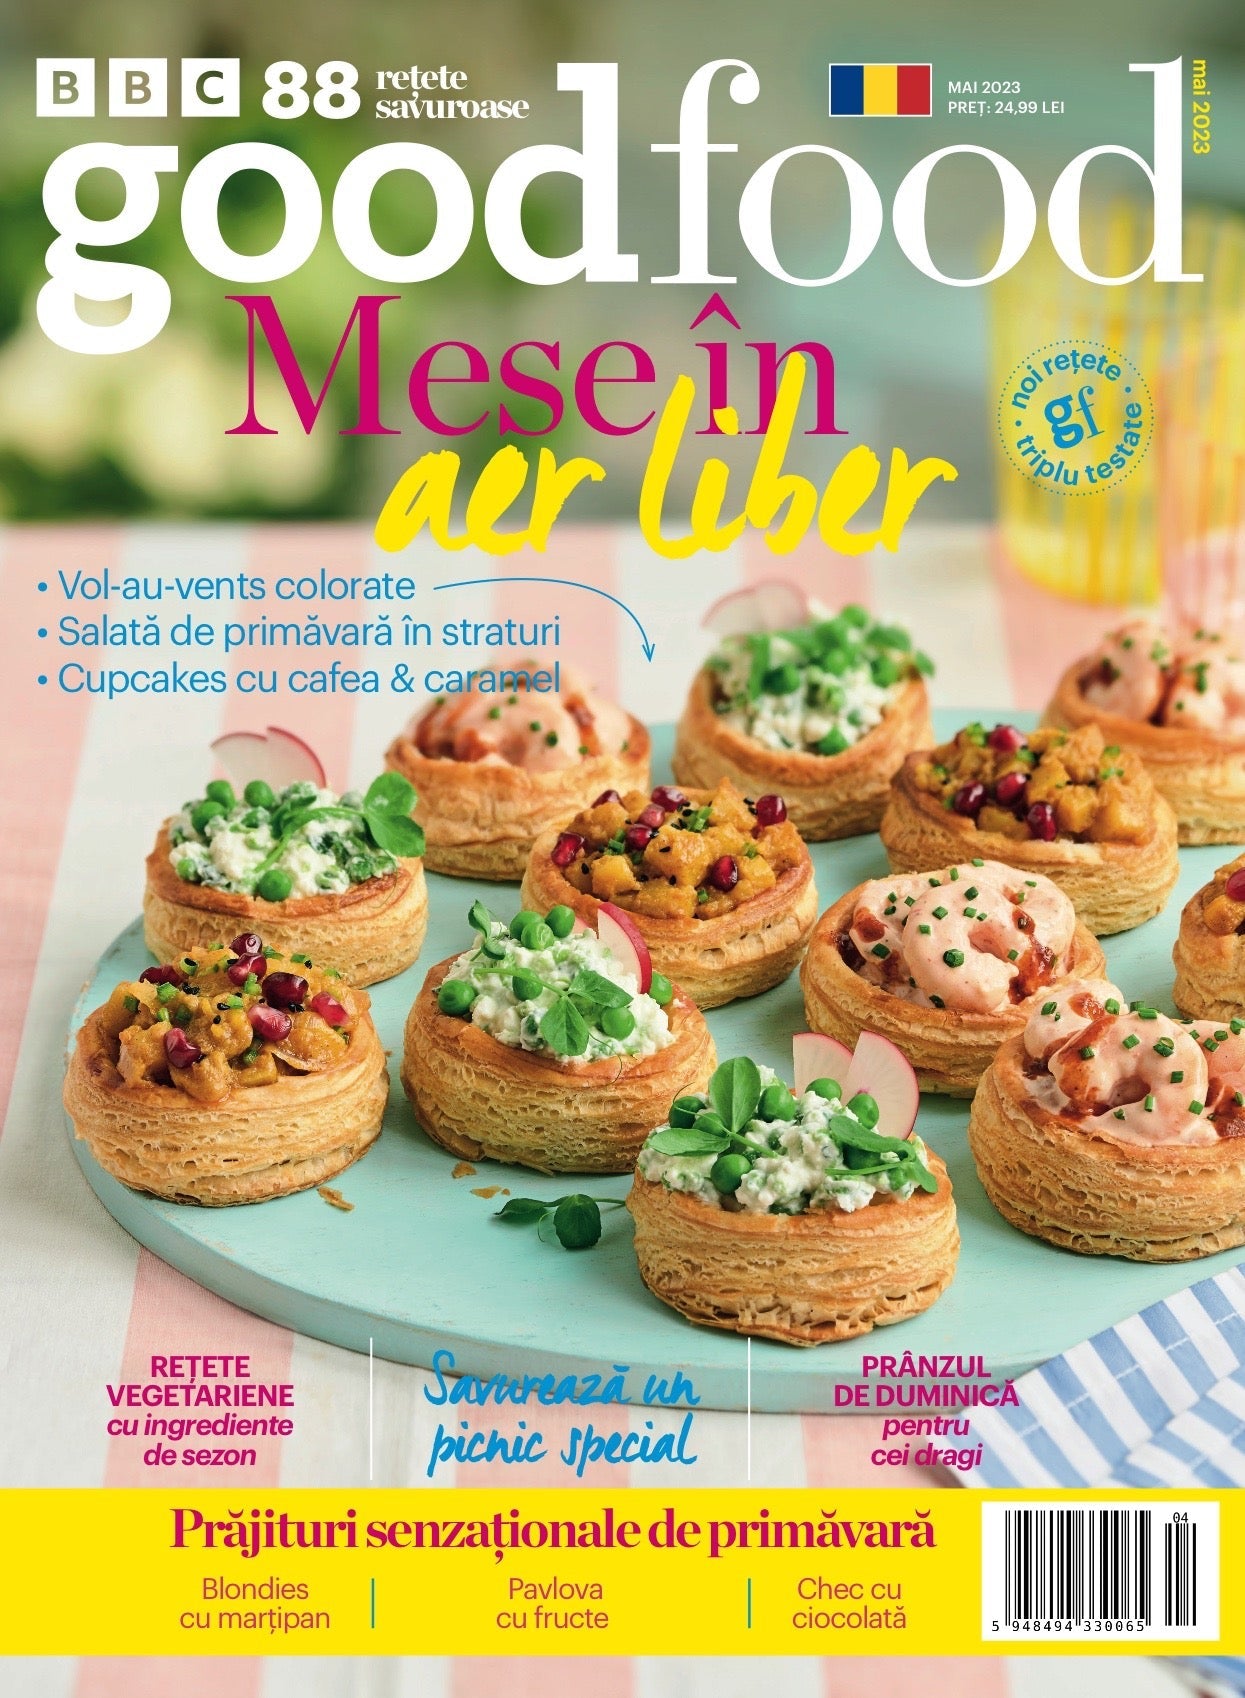 BBC Good Food mai 2023 - Publisol.ro